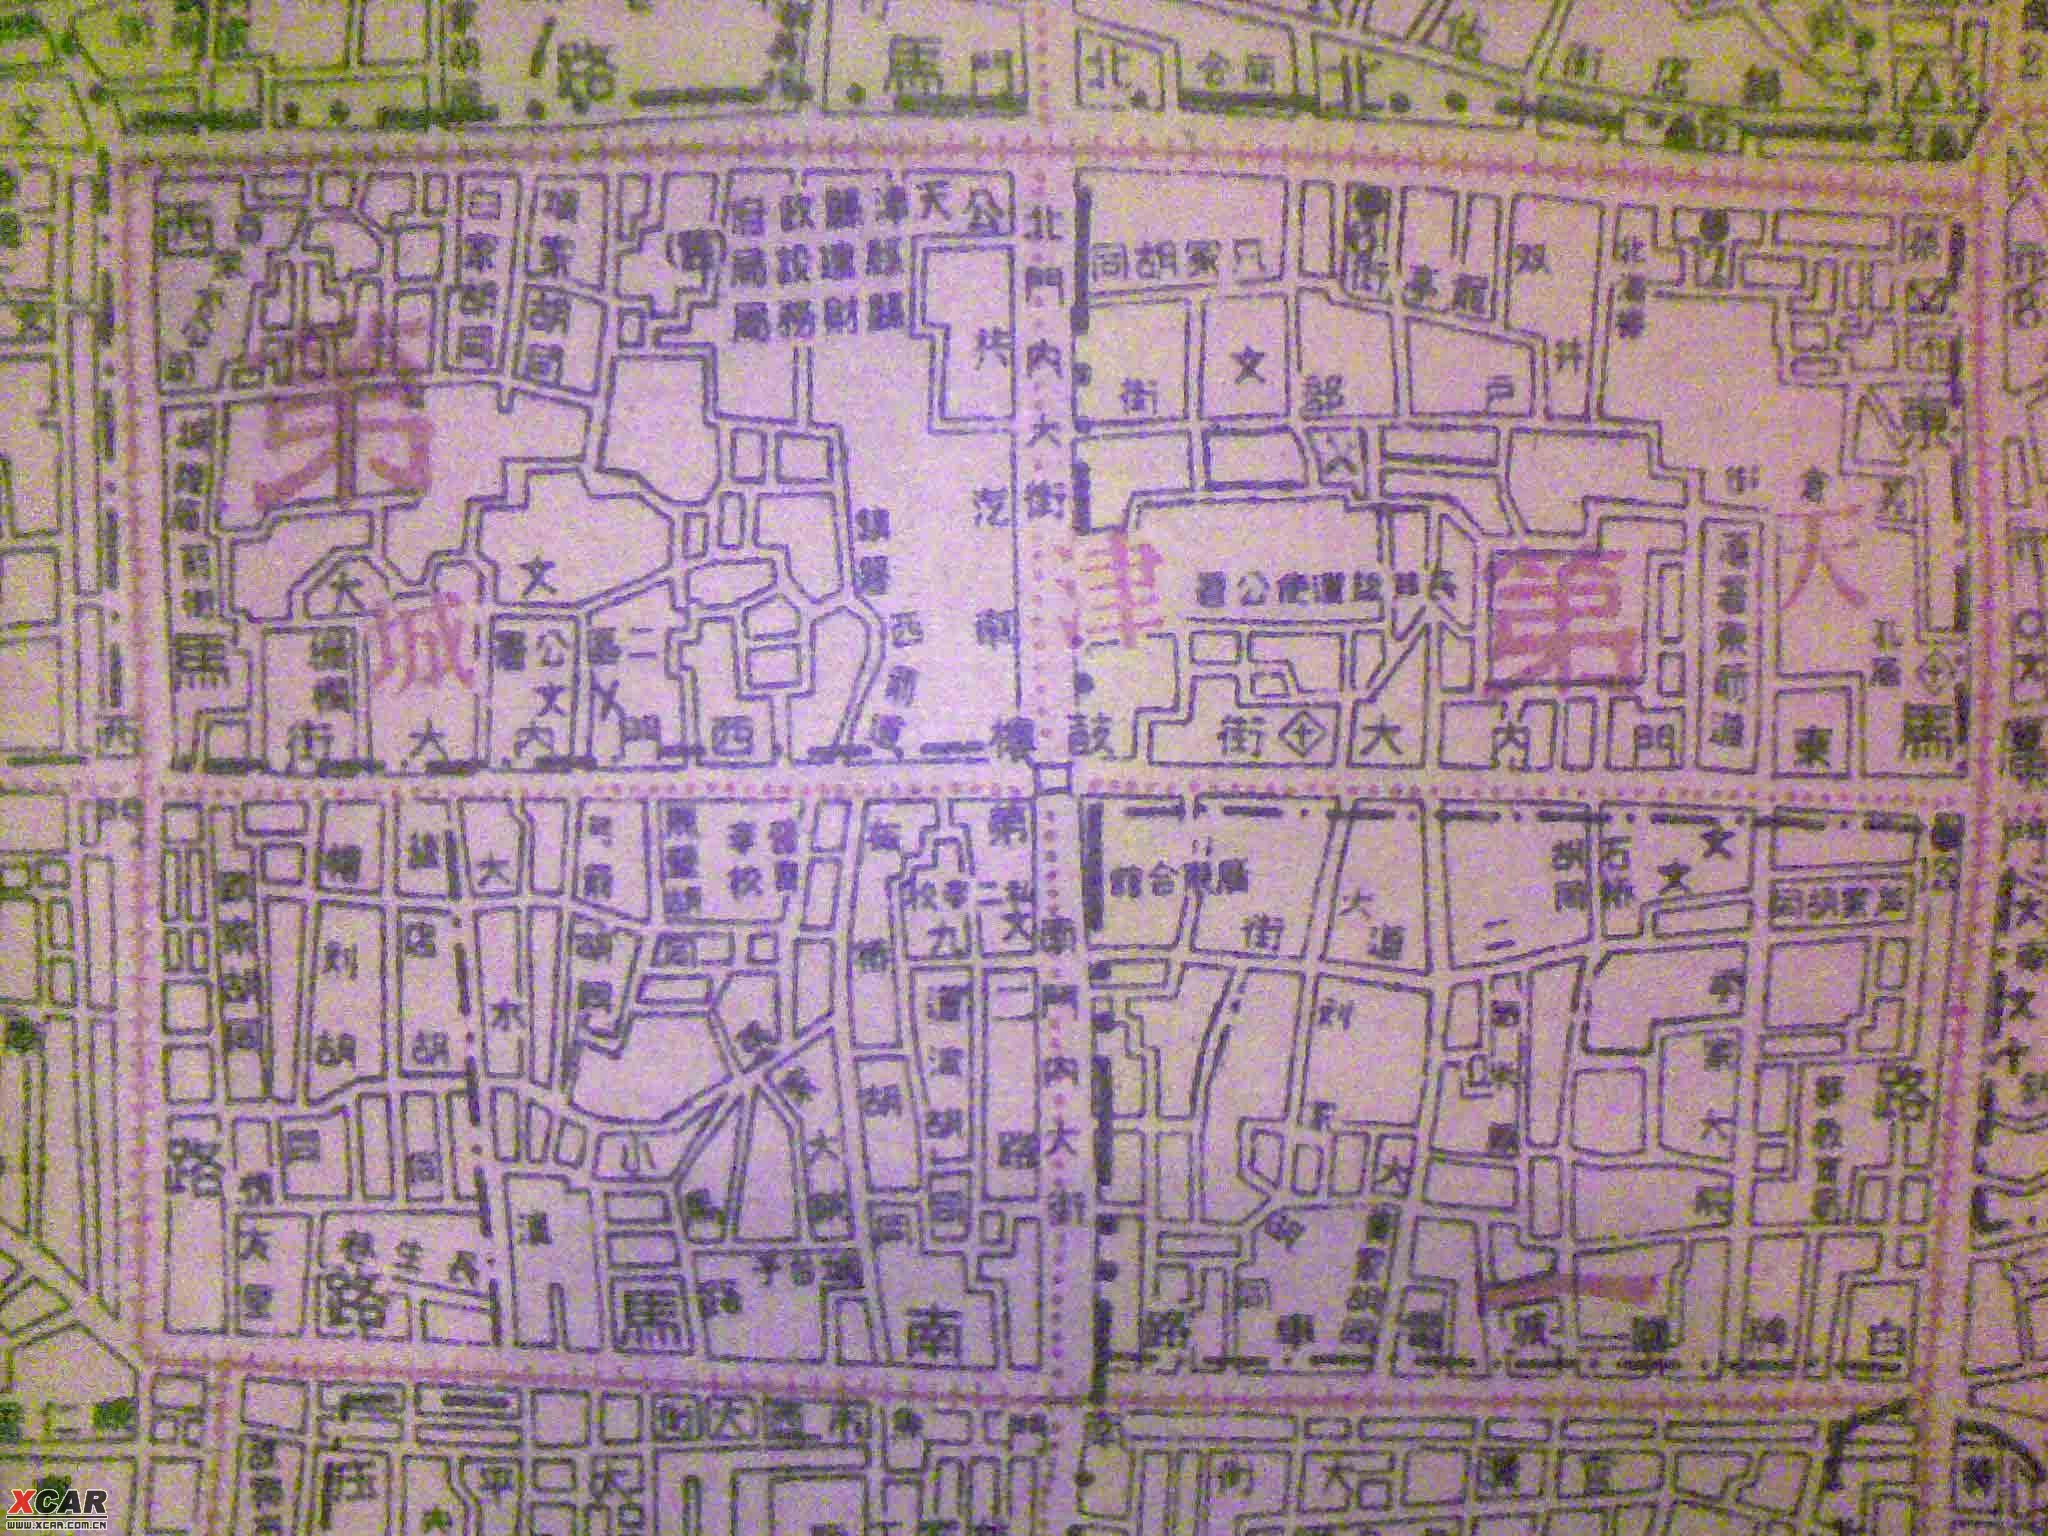 天津市老城里胡同地图图片